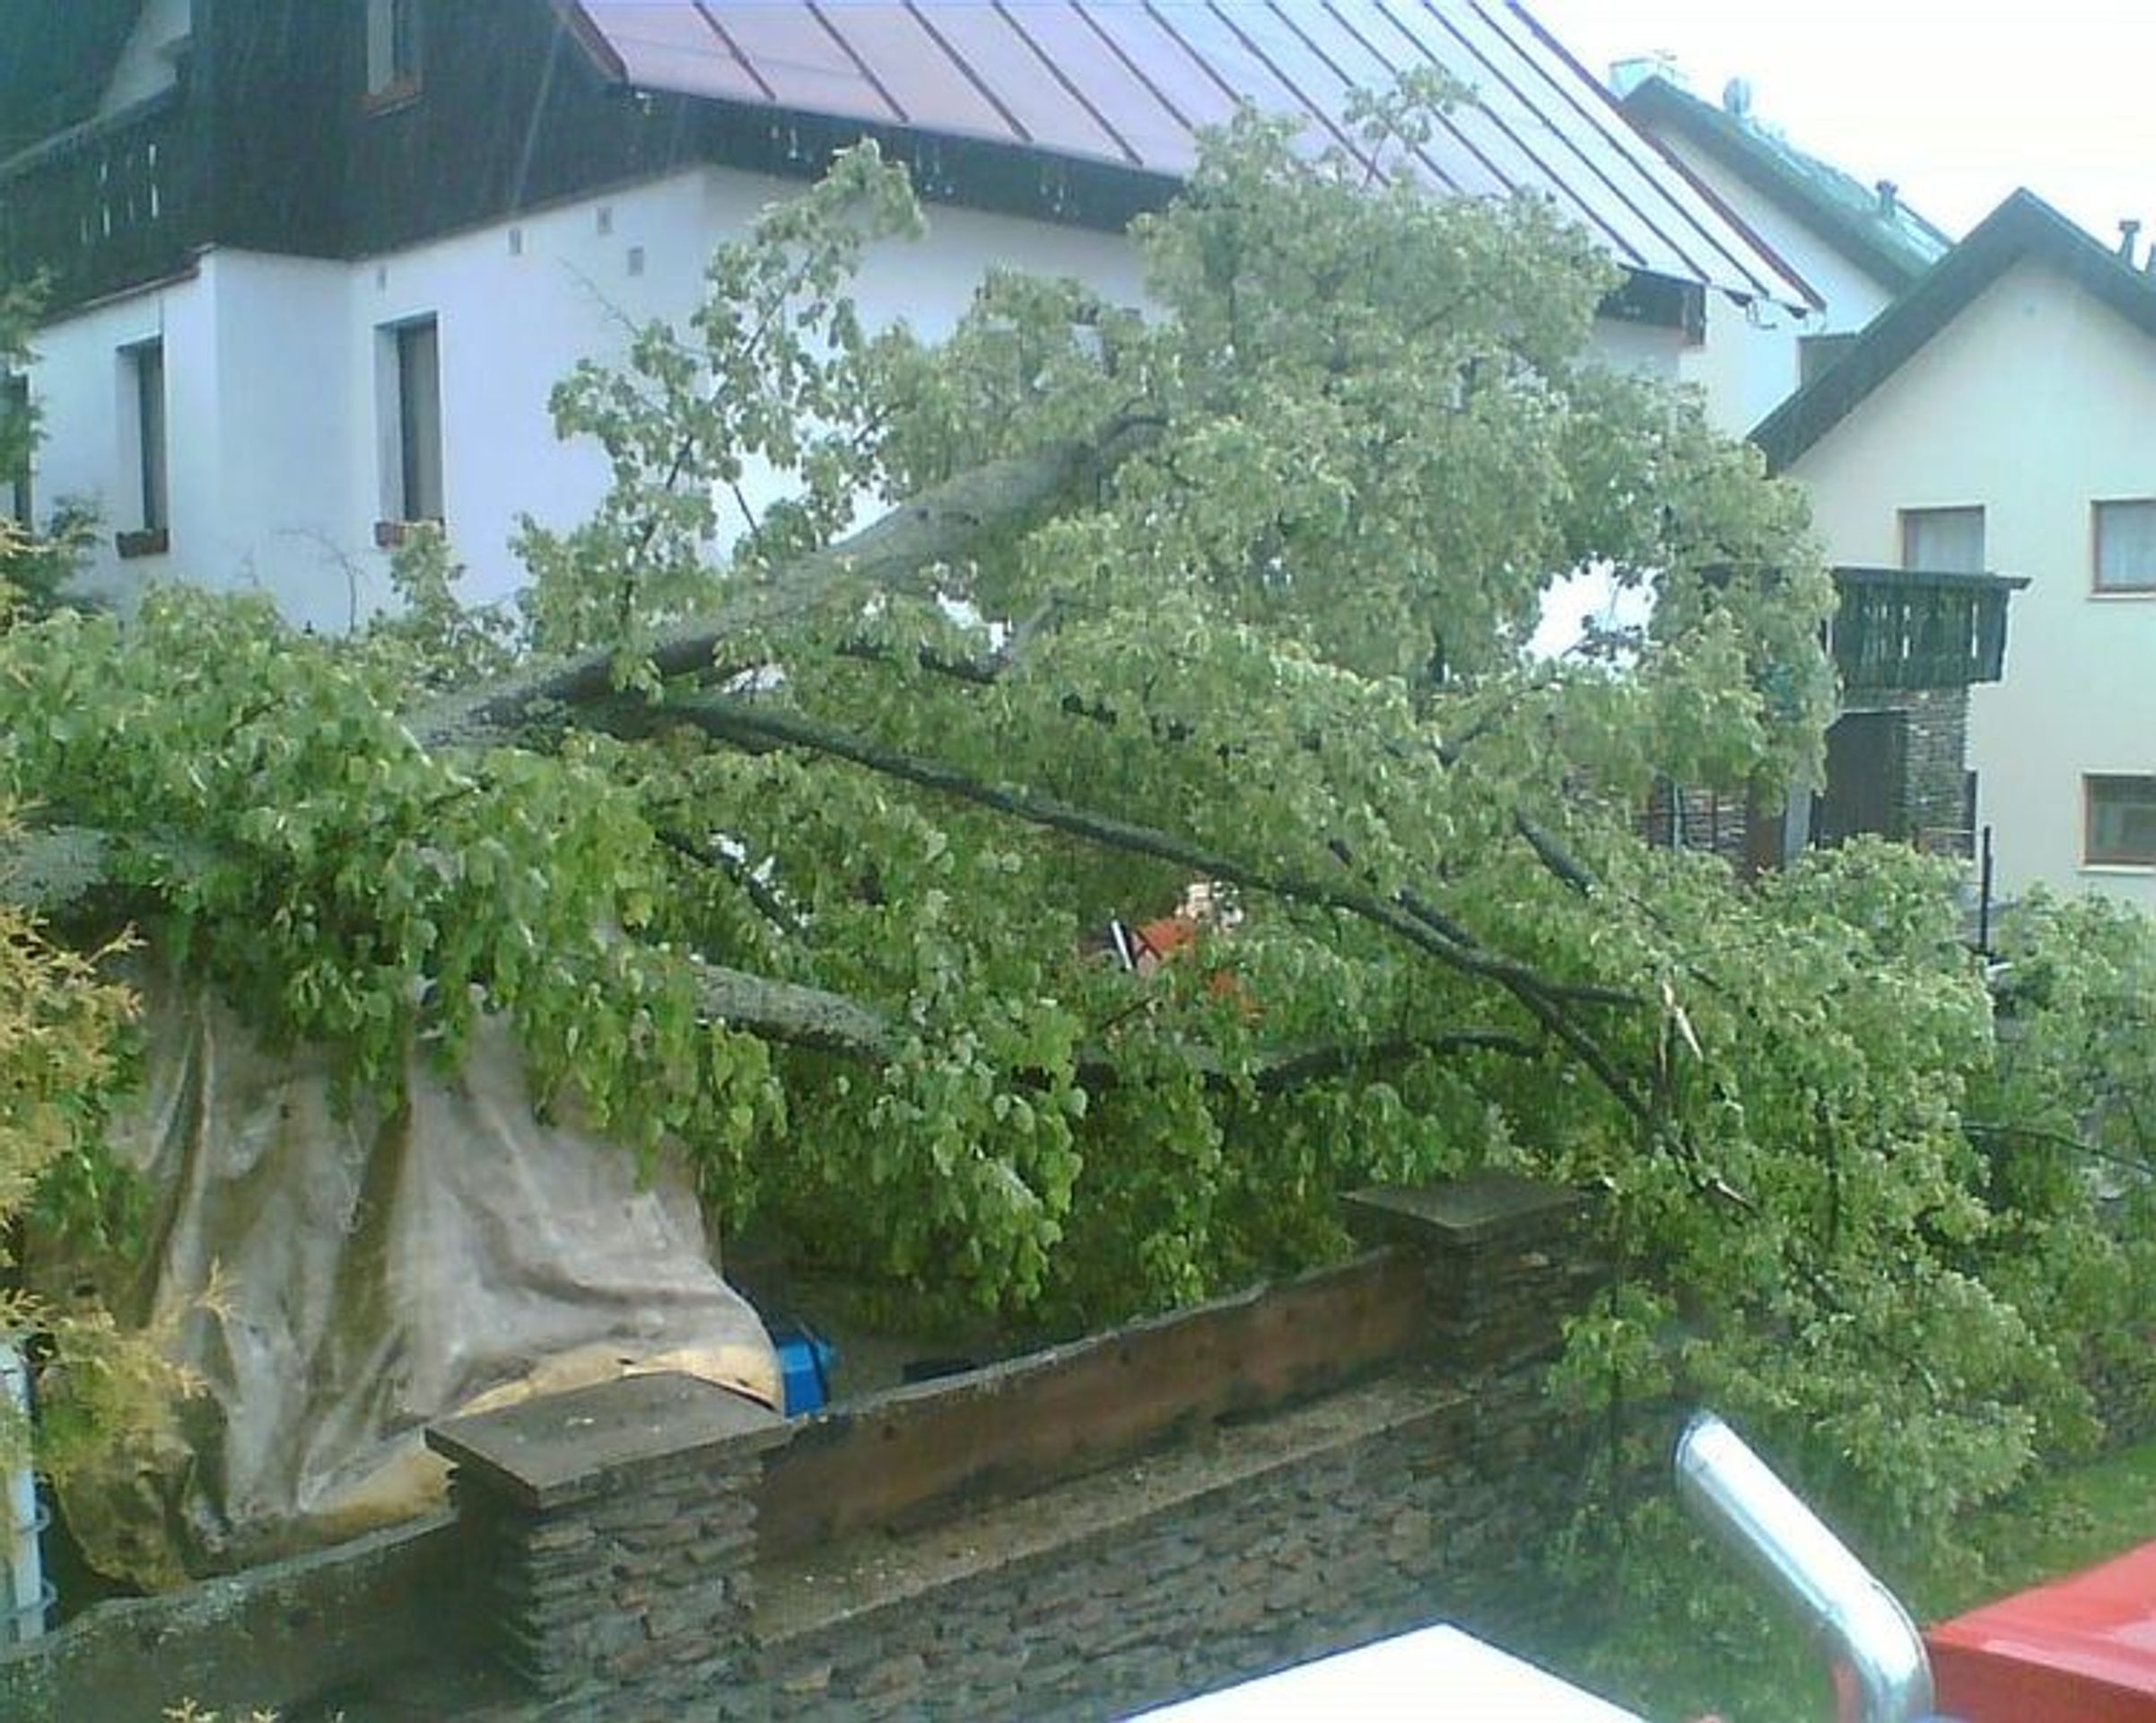 Vítr srazil strom na domek v Železné Rudě - GALERIE: Vichřice srazila strom na domek v Železné Rudě (3/5)